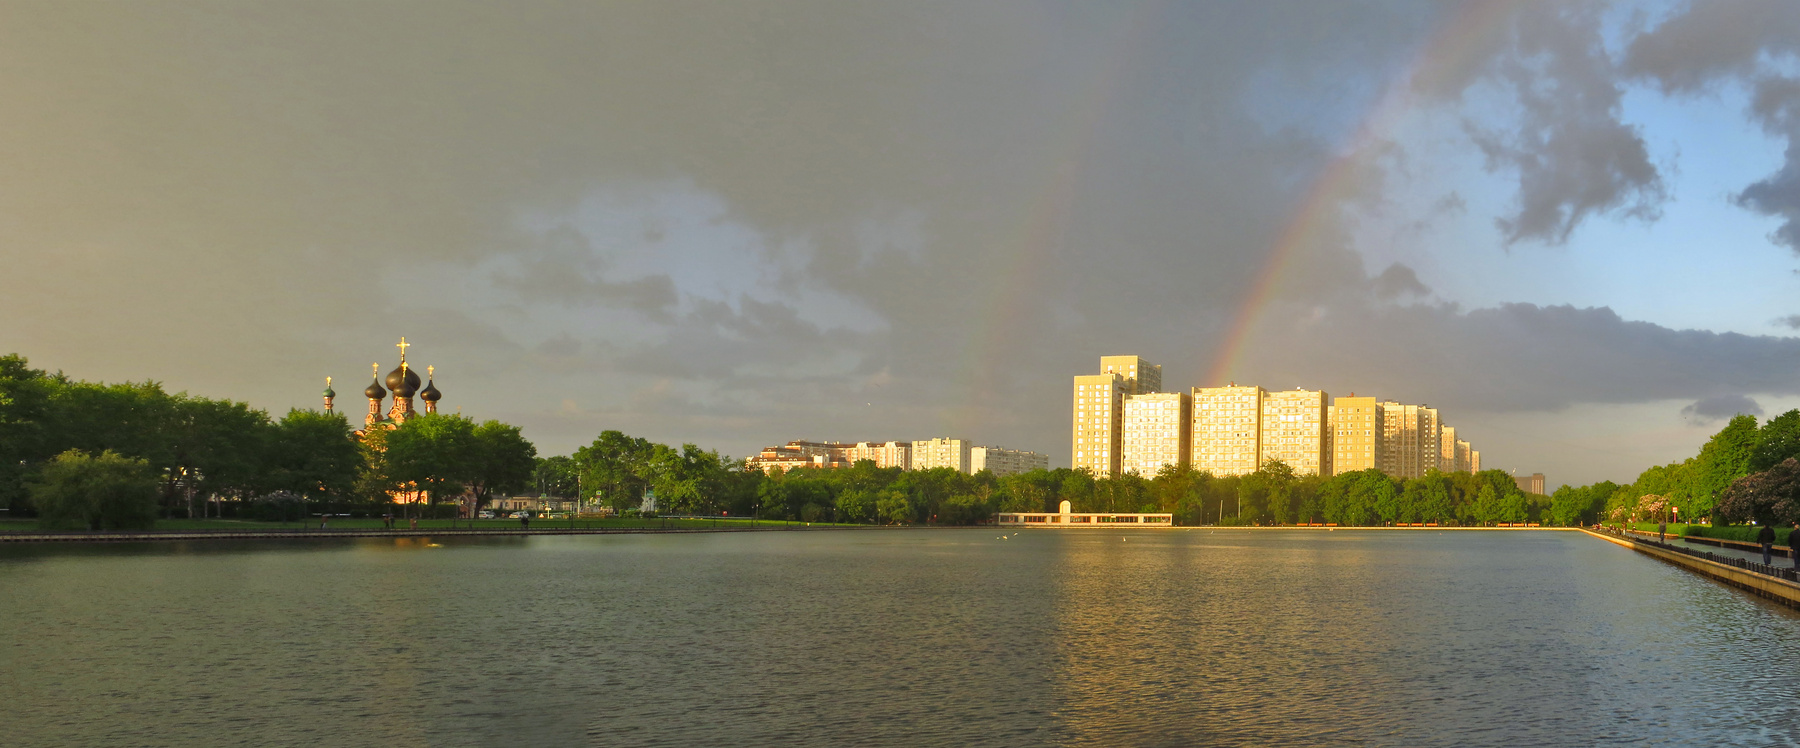 Перед дождем у Останкинского пруда Москва Останкино пруд радуга